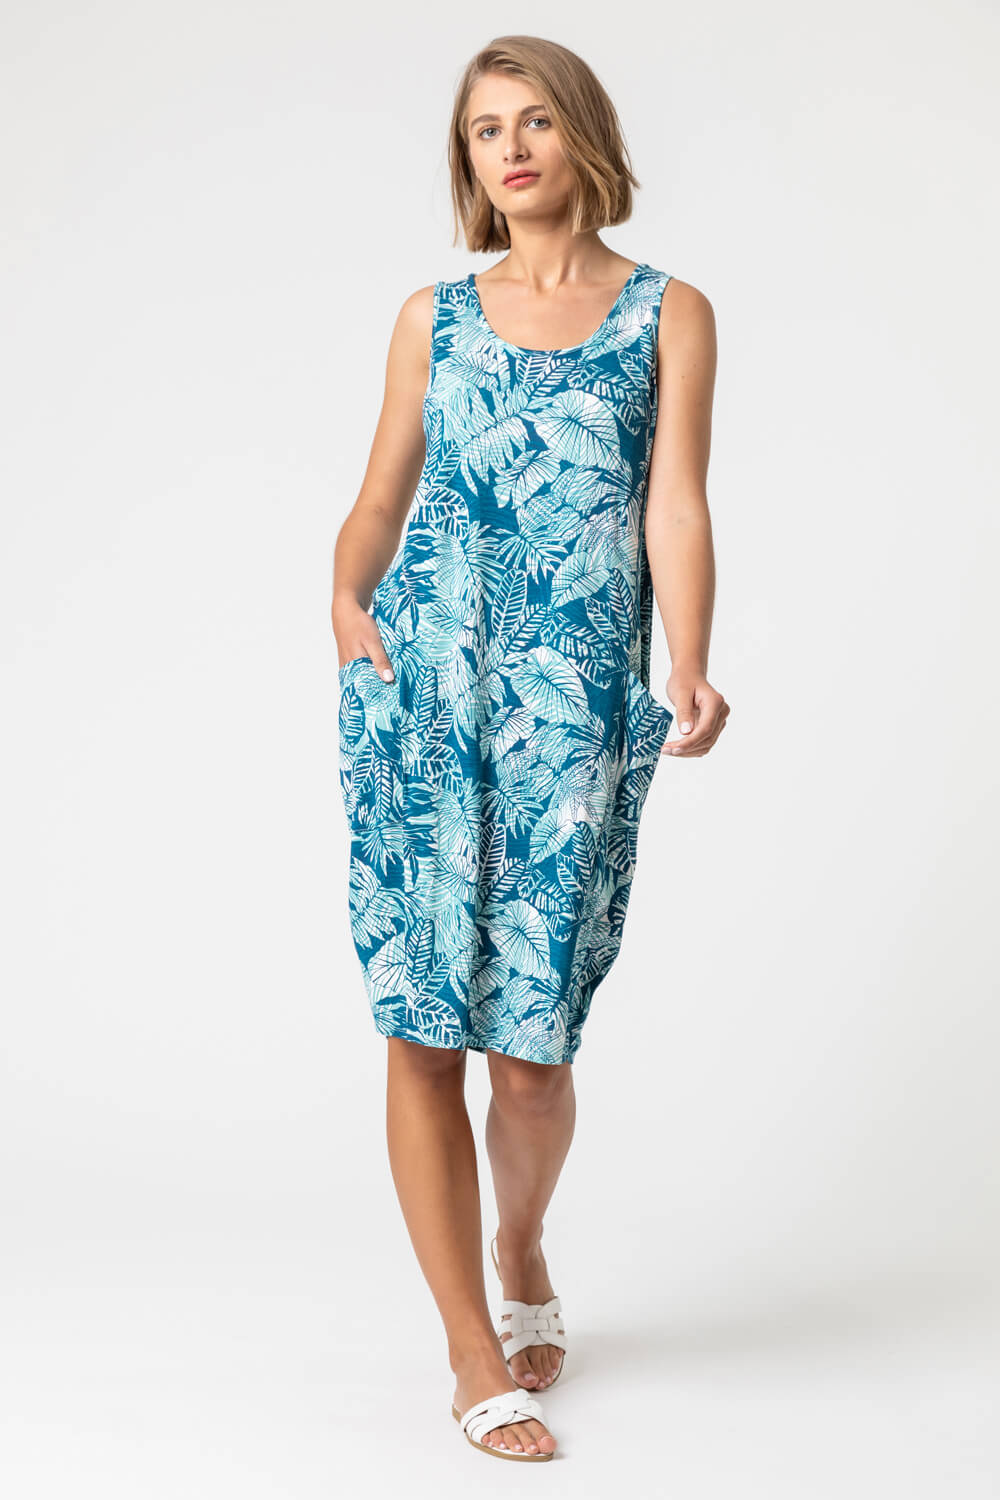 Leaf Print Slouch Pocket Dress in Blue - Roman Originals UK